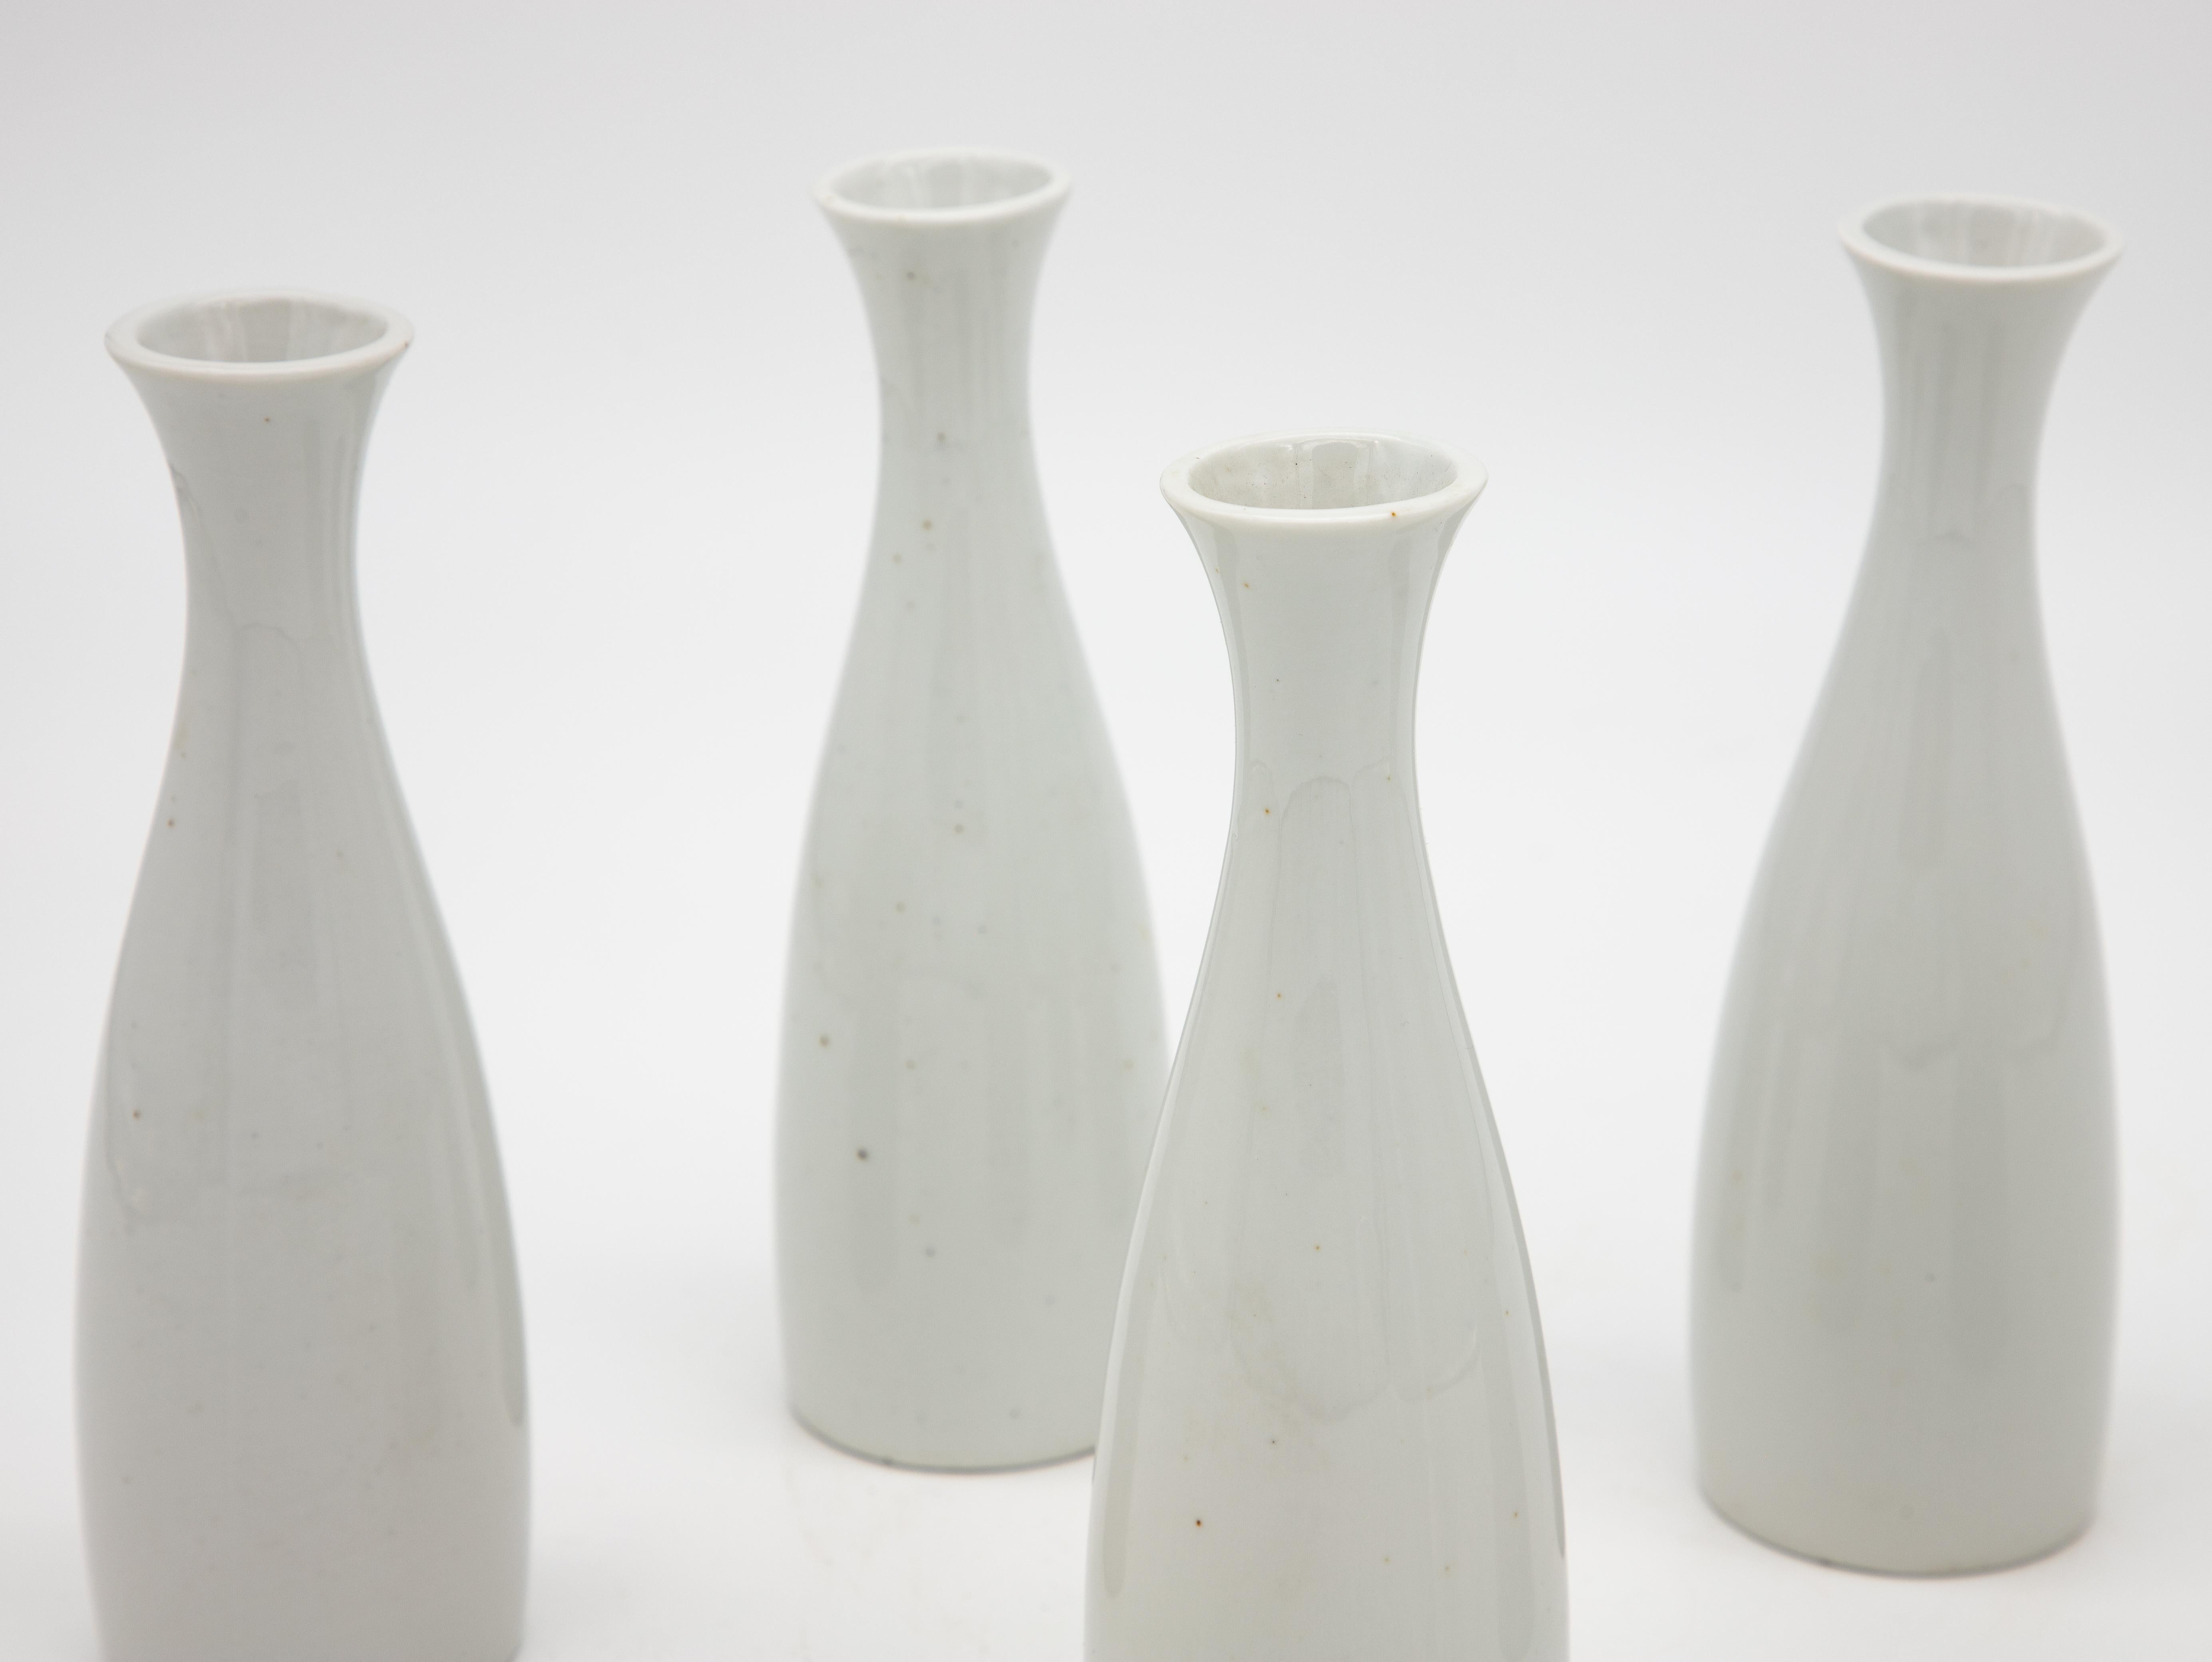 Un ensemble de cinq vases à bourgeons en céramique blanche. La marque verte du fabricant sur le fond indique 